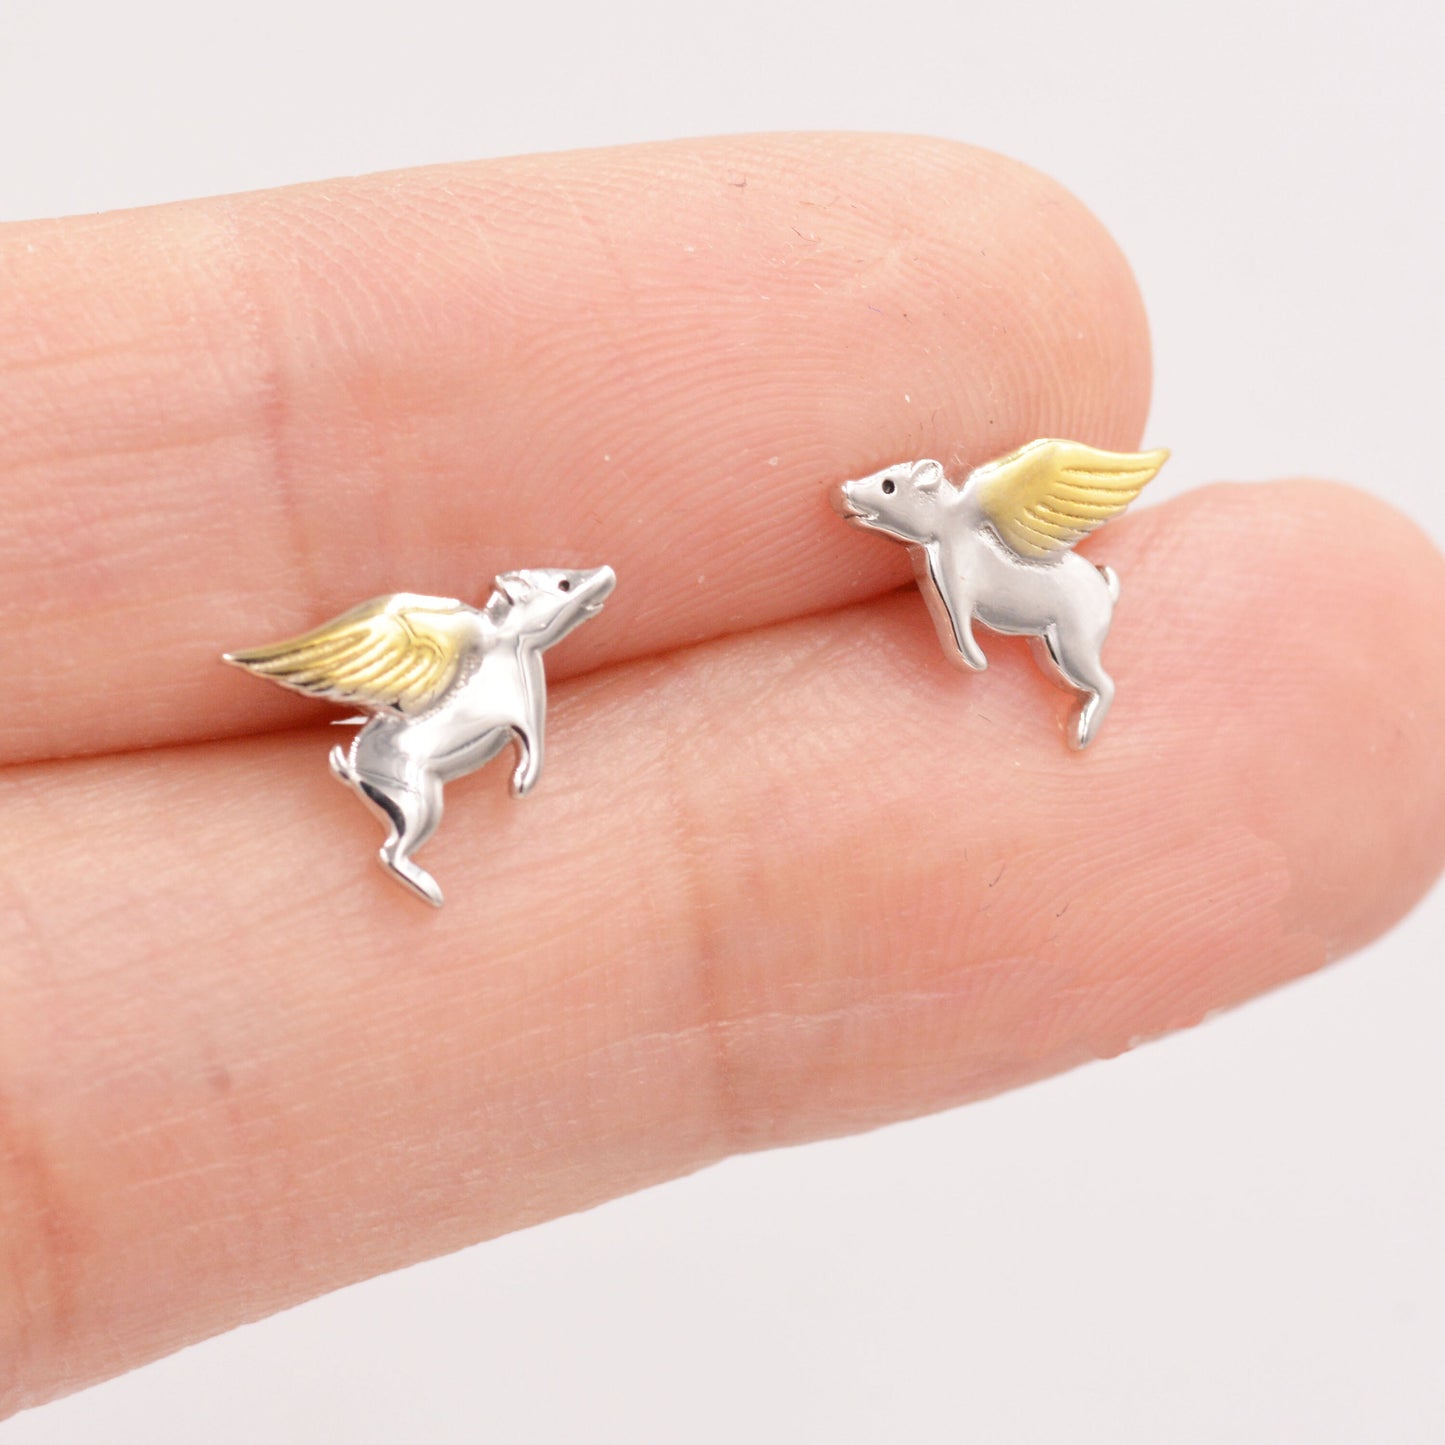 Flying Pig Stud Earrings in Sterling Silver - Pigs Can Fly - Farm Animal Stud Earrings  - Cute,  Fun, Whimsical